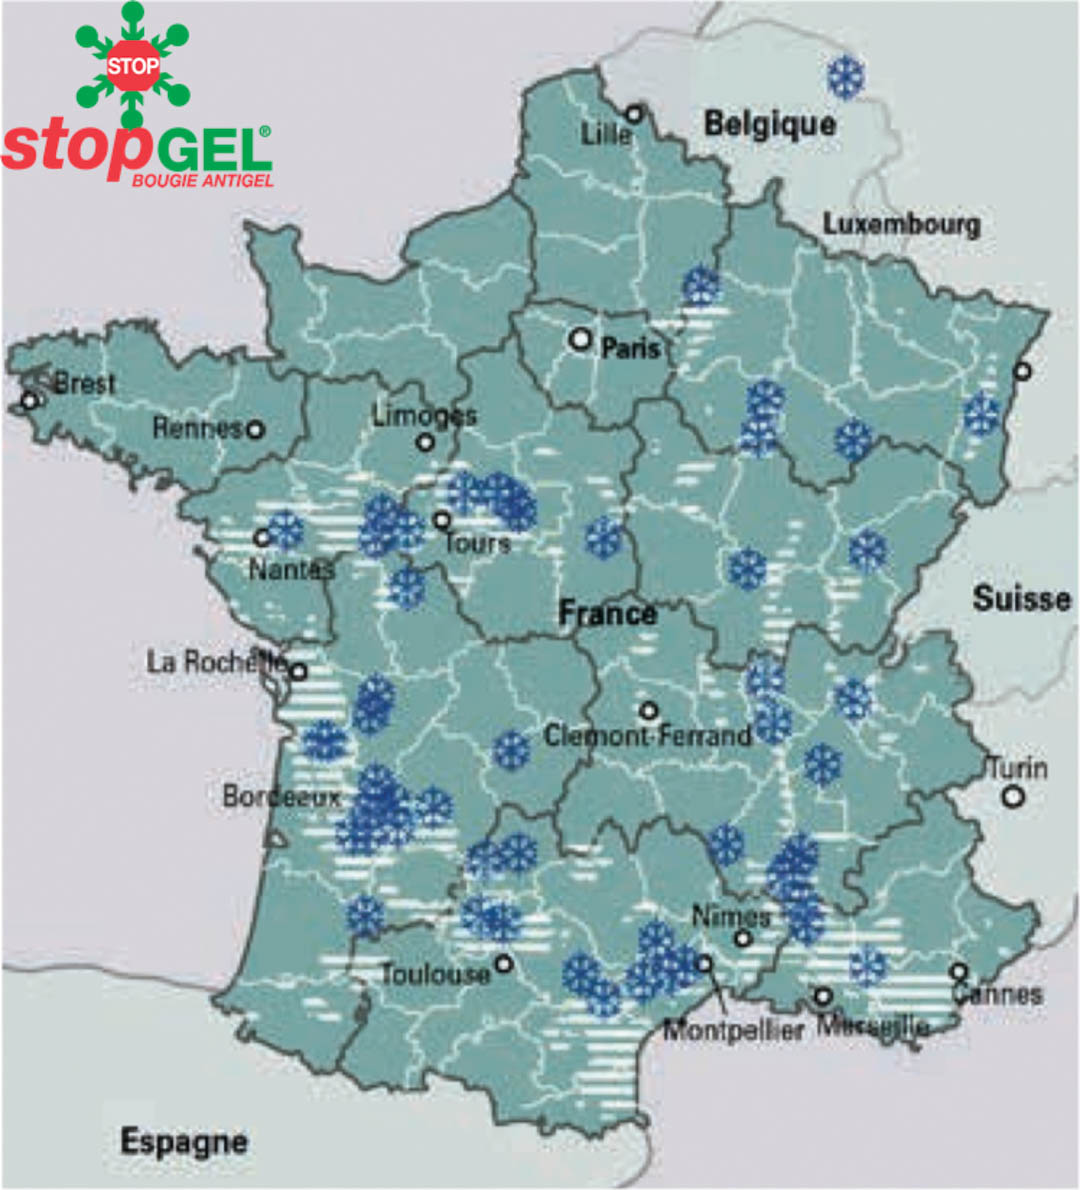 Mapa de las regiones francesas afectadas por las heladas en 2017